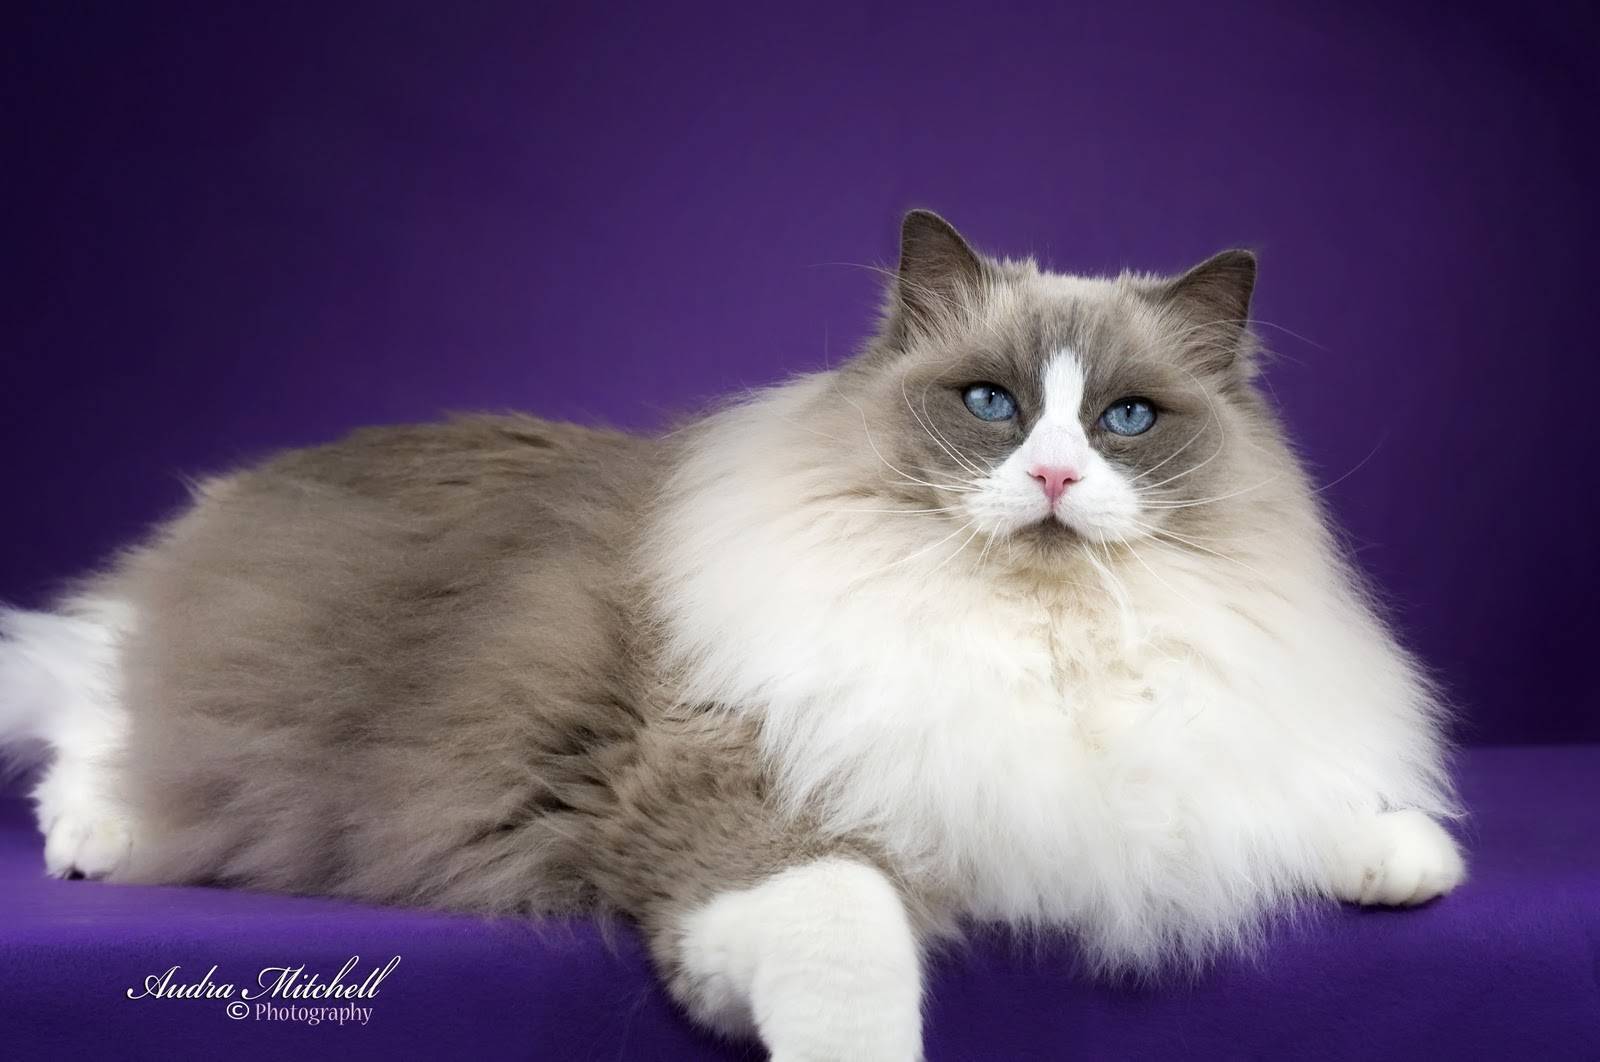 Рэгдолл: 125 фото кошек, описание породы, стандарты и характеристики породистой кошки